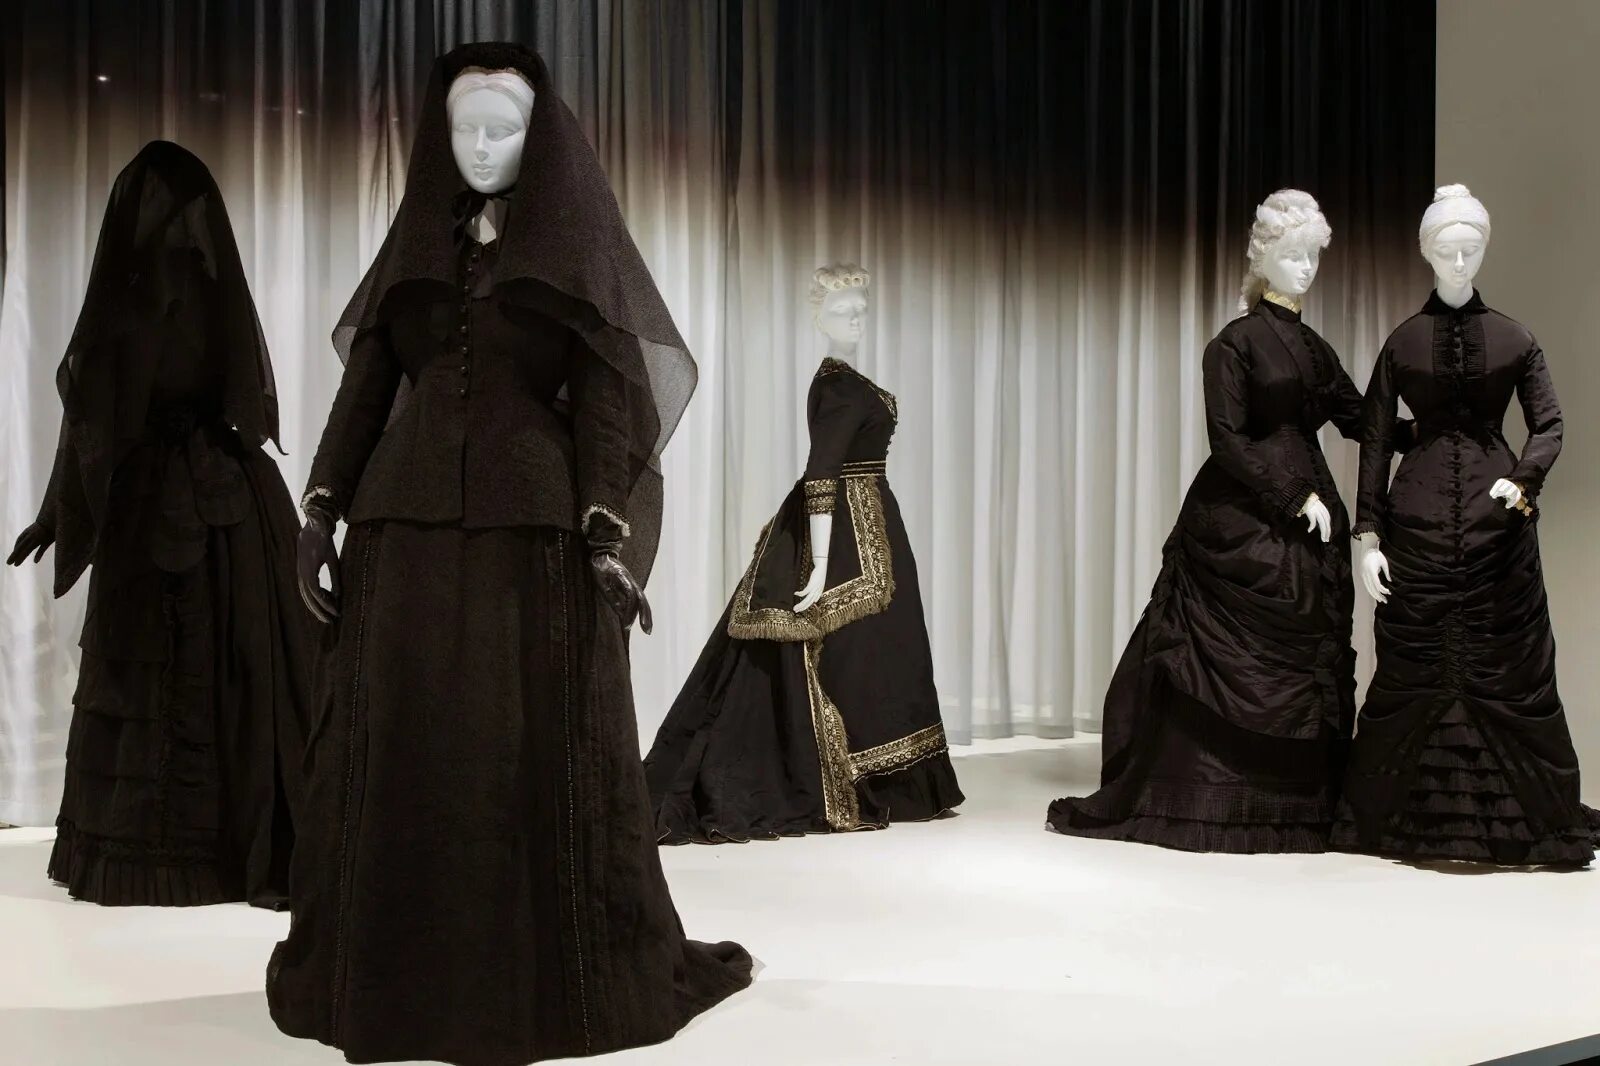 Траурное платье 19 век Англия. Платье вдовы 19 век. Траурный наряд женщин 17 века в Англии. Траурная одежда для женщин.